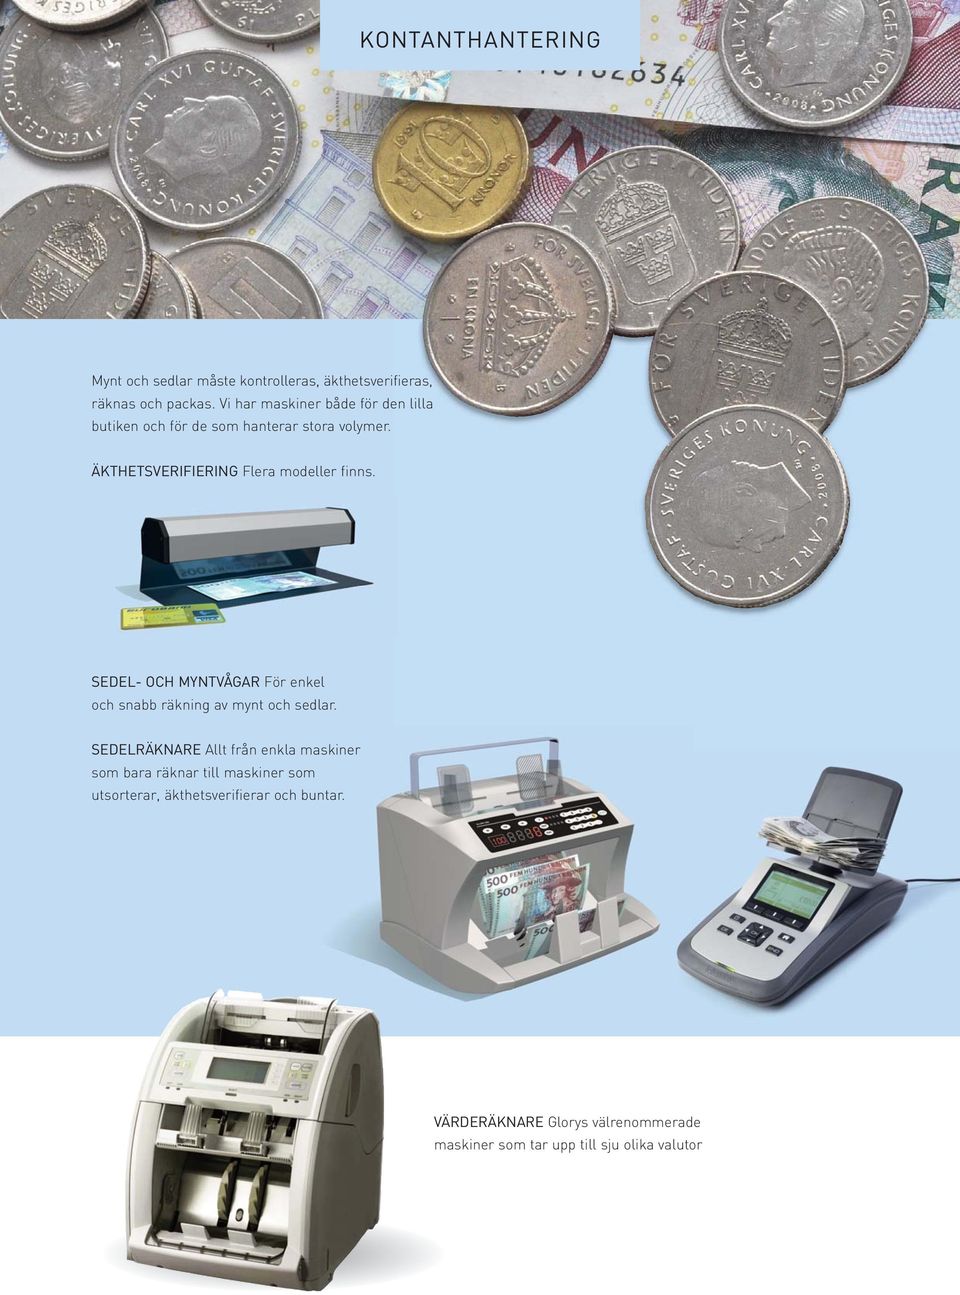 ÄKTHETSVERIFIERING Flera modeller finns. SEDEL- OCH MYNTVÅGAR För enkel och snabb räkning av mynt och sedlar.